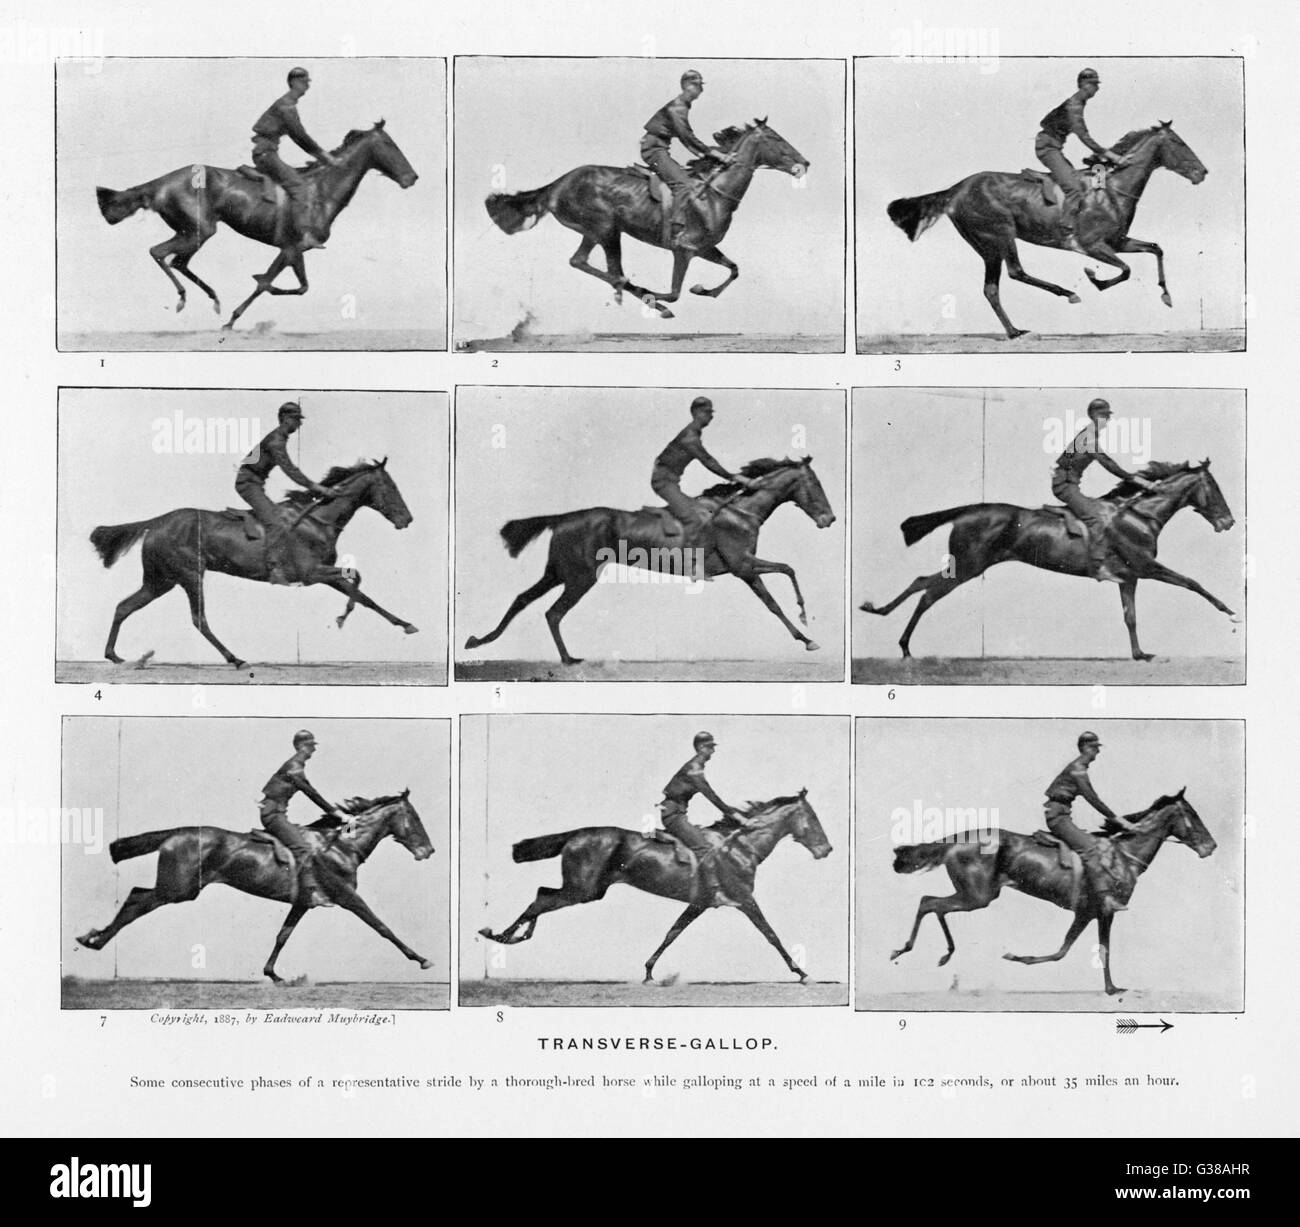 Cavallo - galoppo trasversale data: 1880 Foto Stock